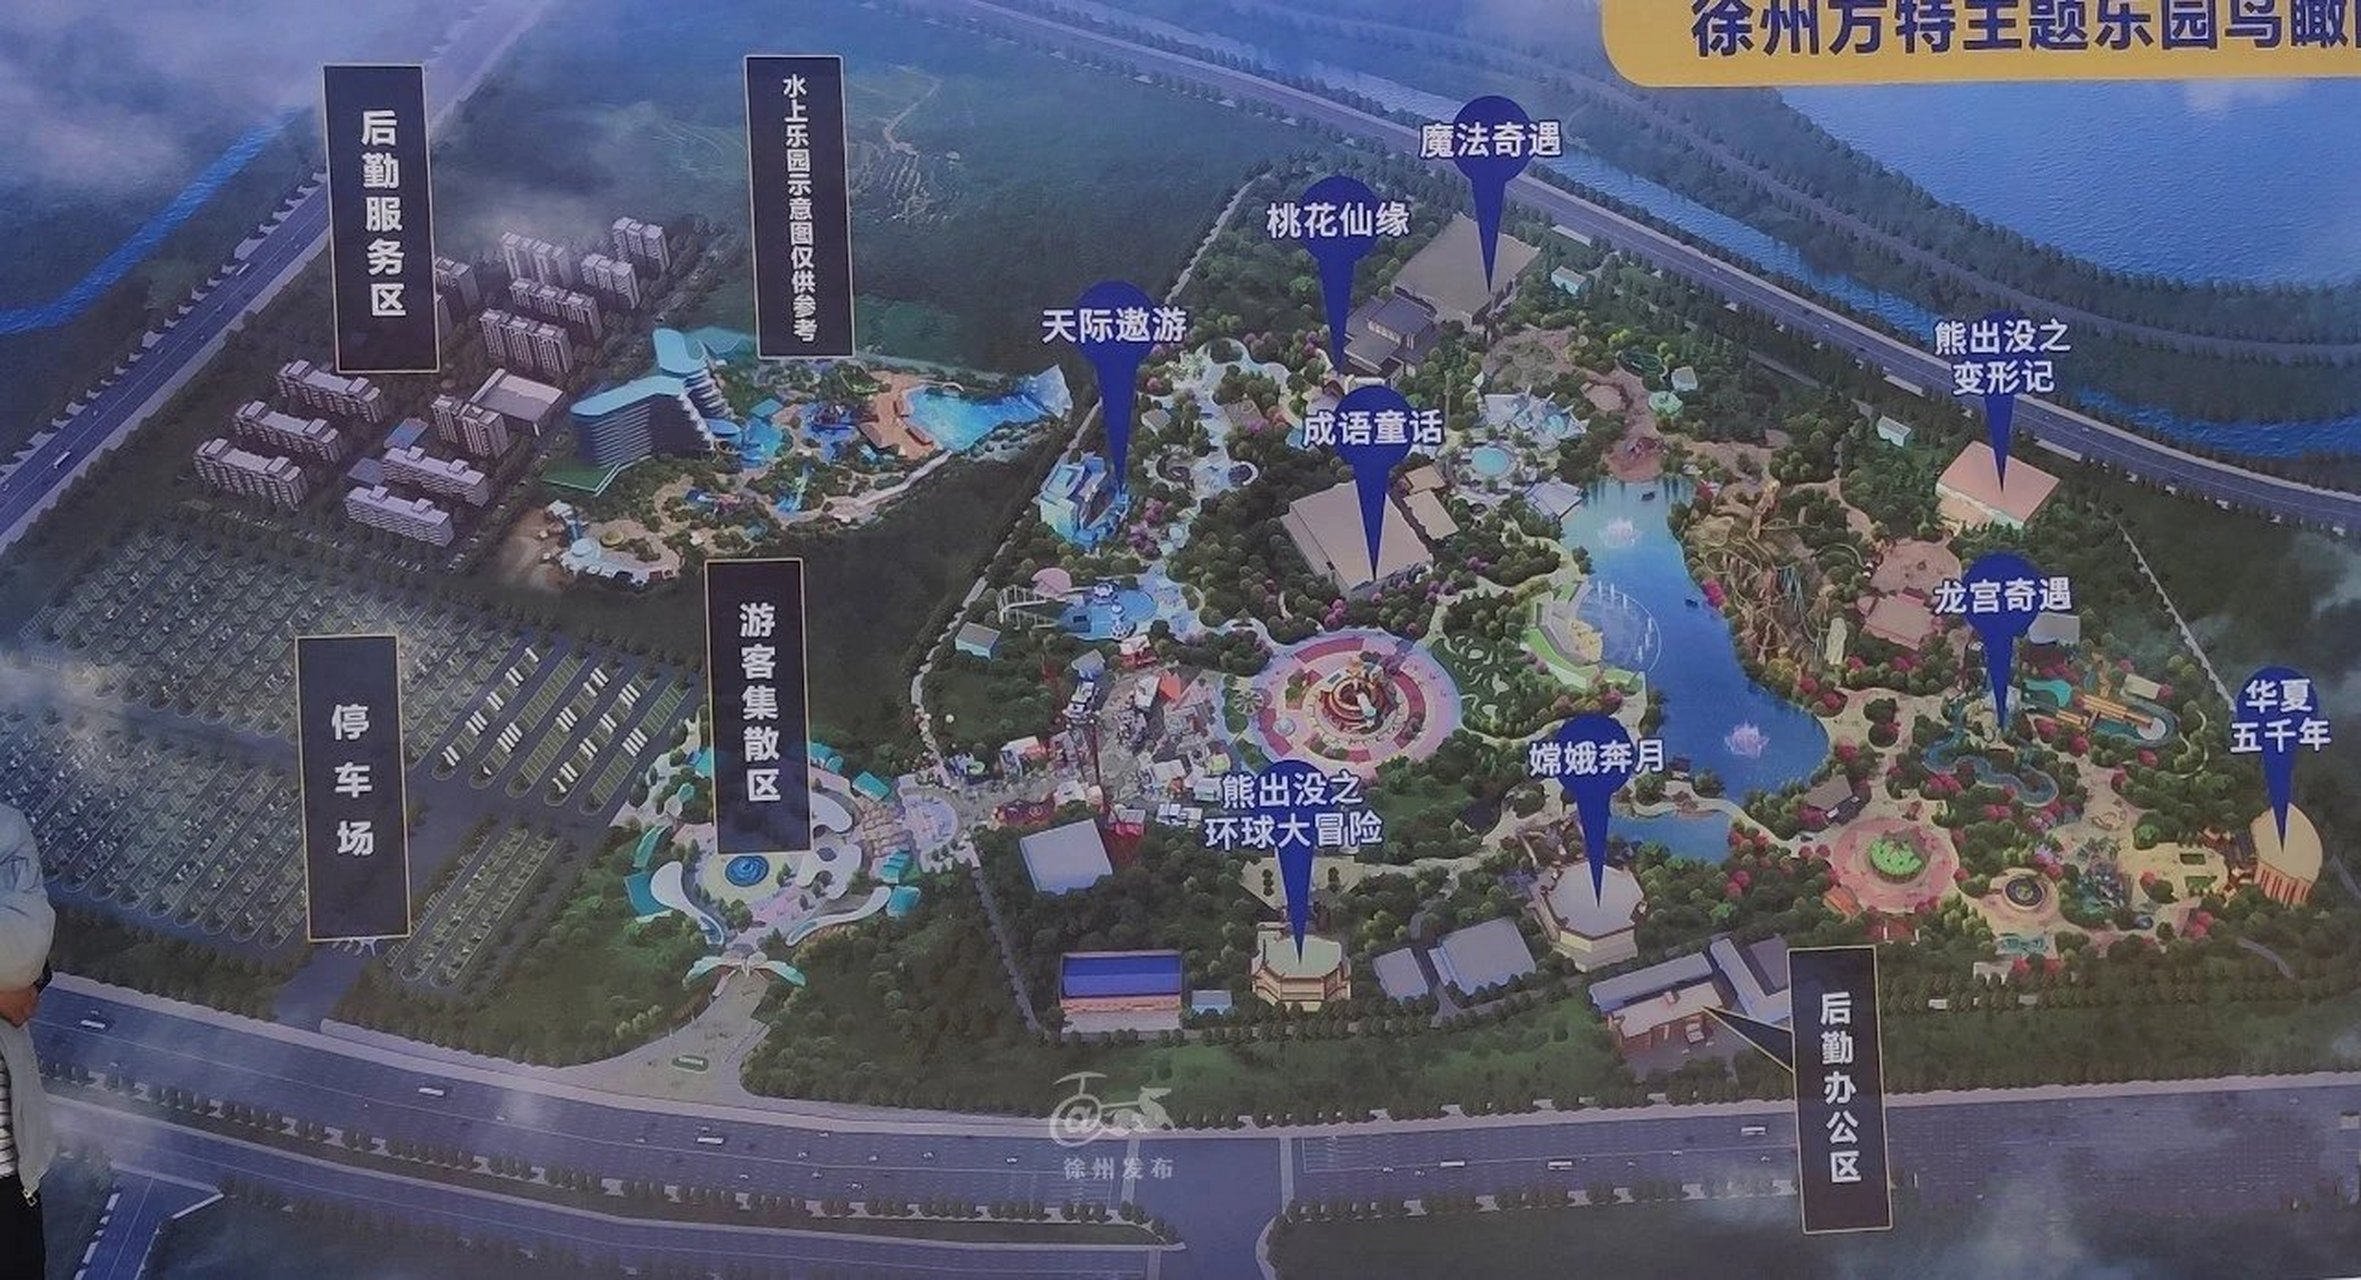 小编了解到,作为全国第40座的徐州方特乐园,投资约40亿元,占地400余